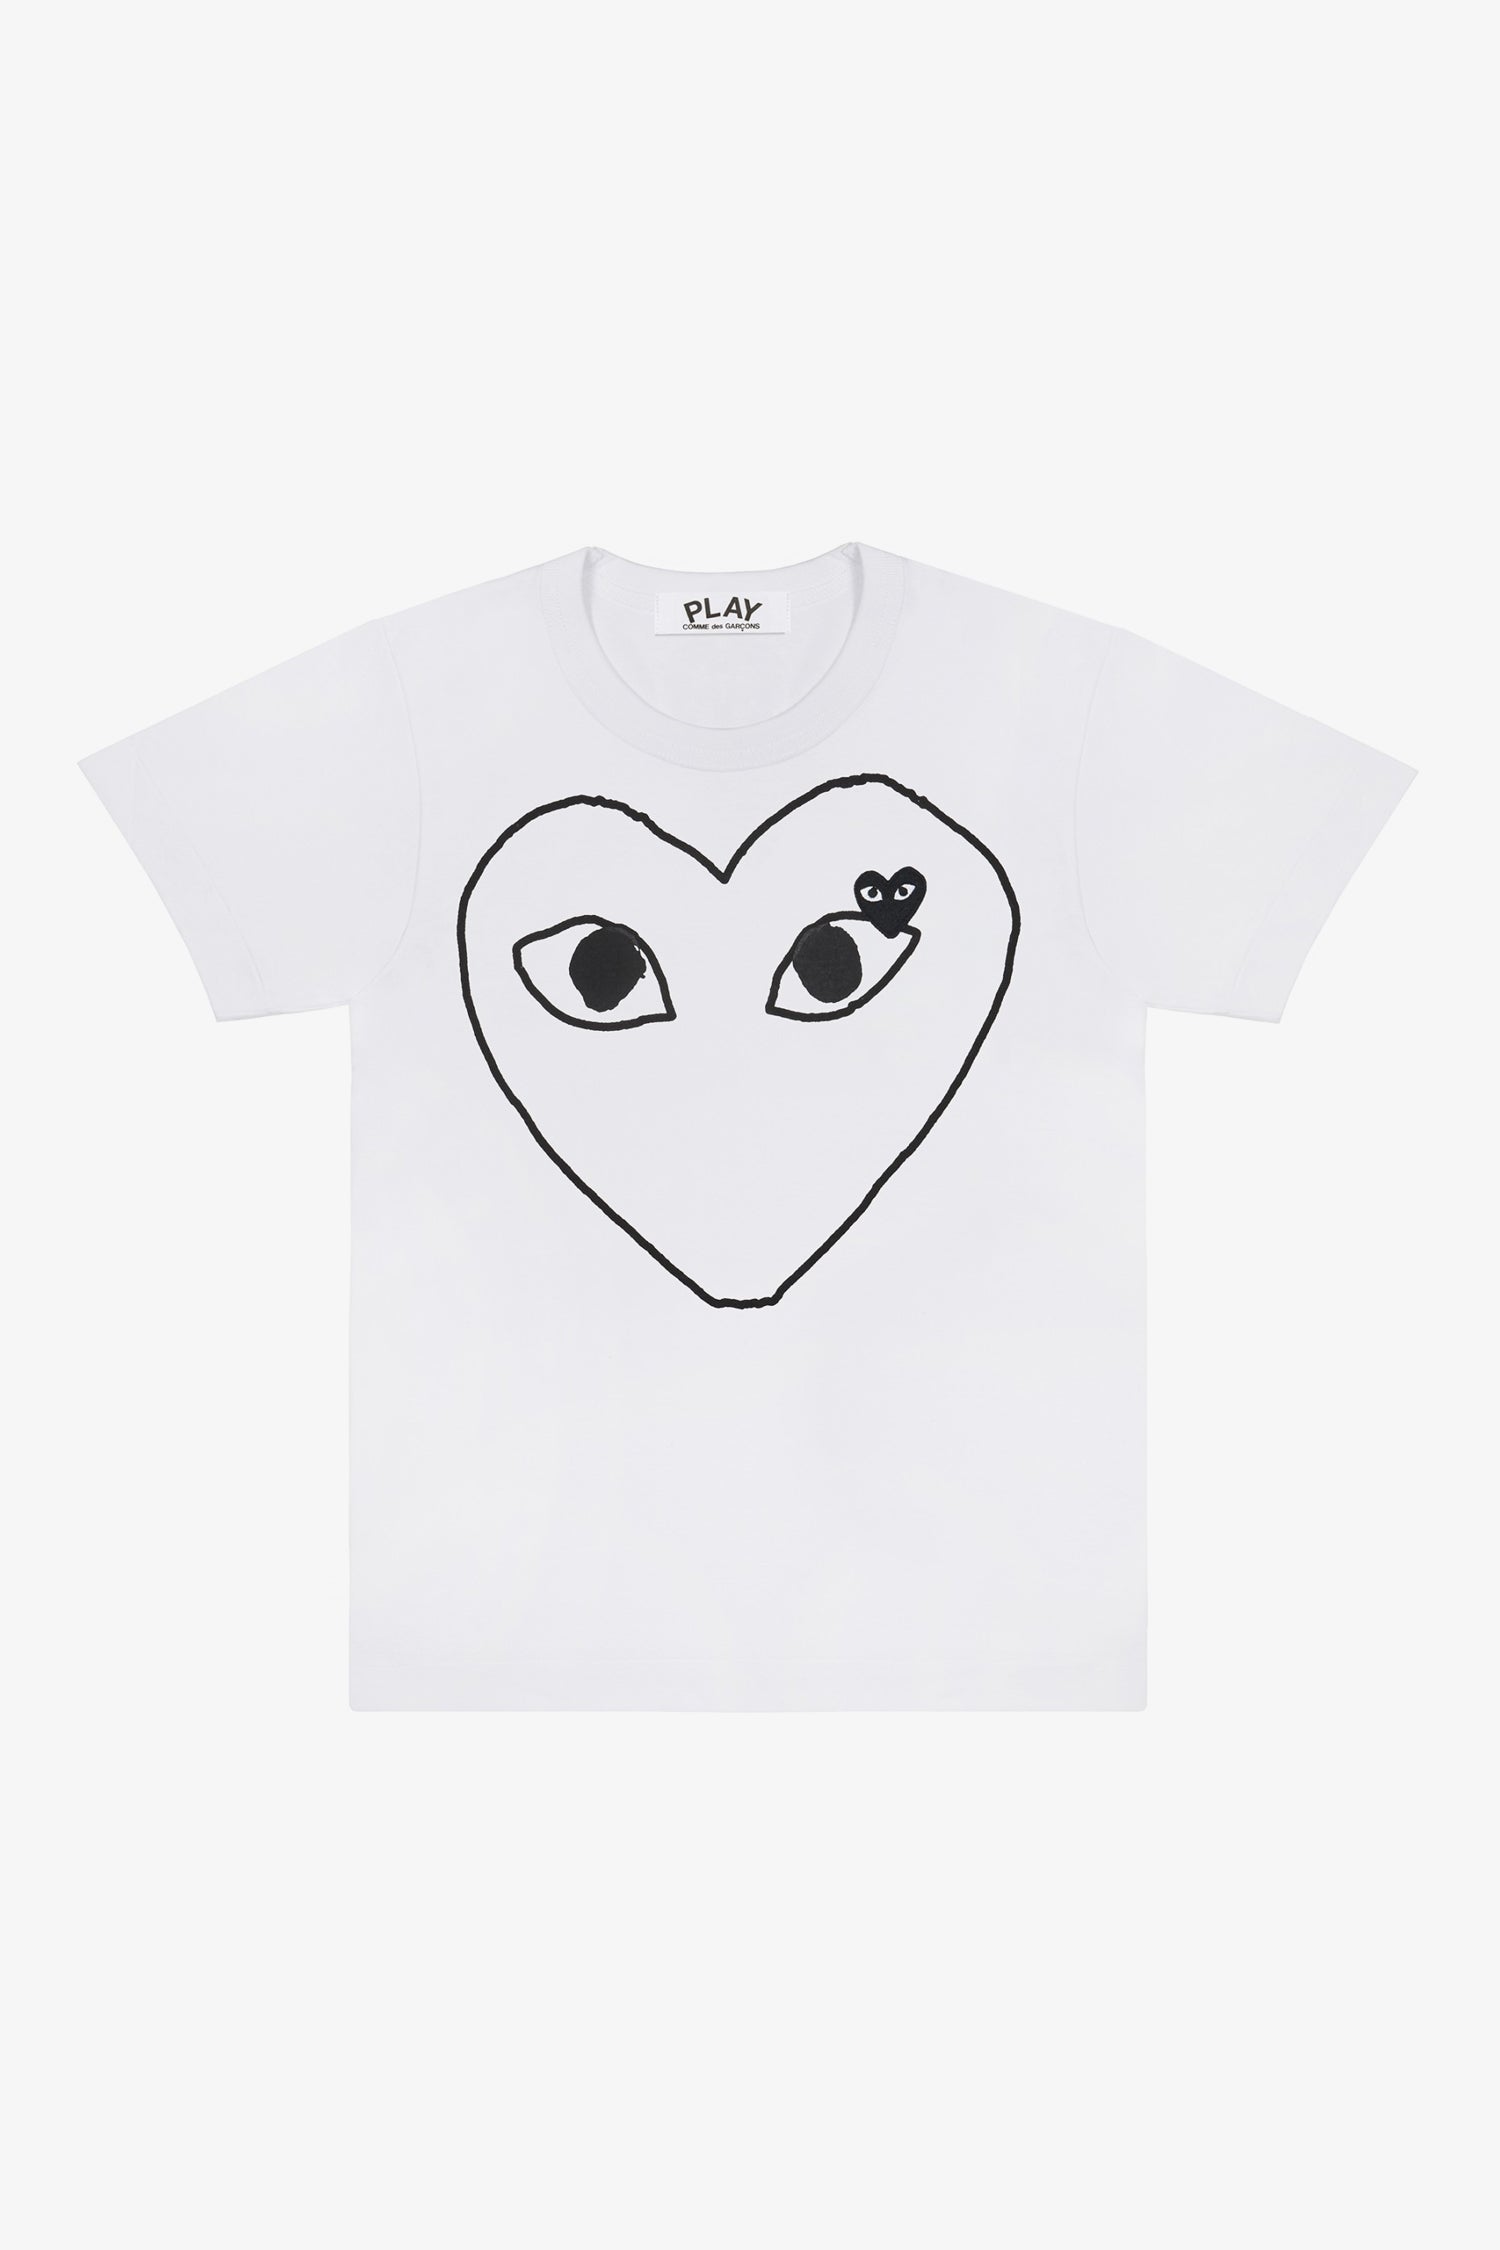 Selectshop FRAME - COMME DES GARCONS PLAY Empty Big Black Heart T-Shirt T-Shirt Dubai